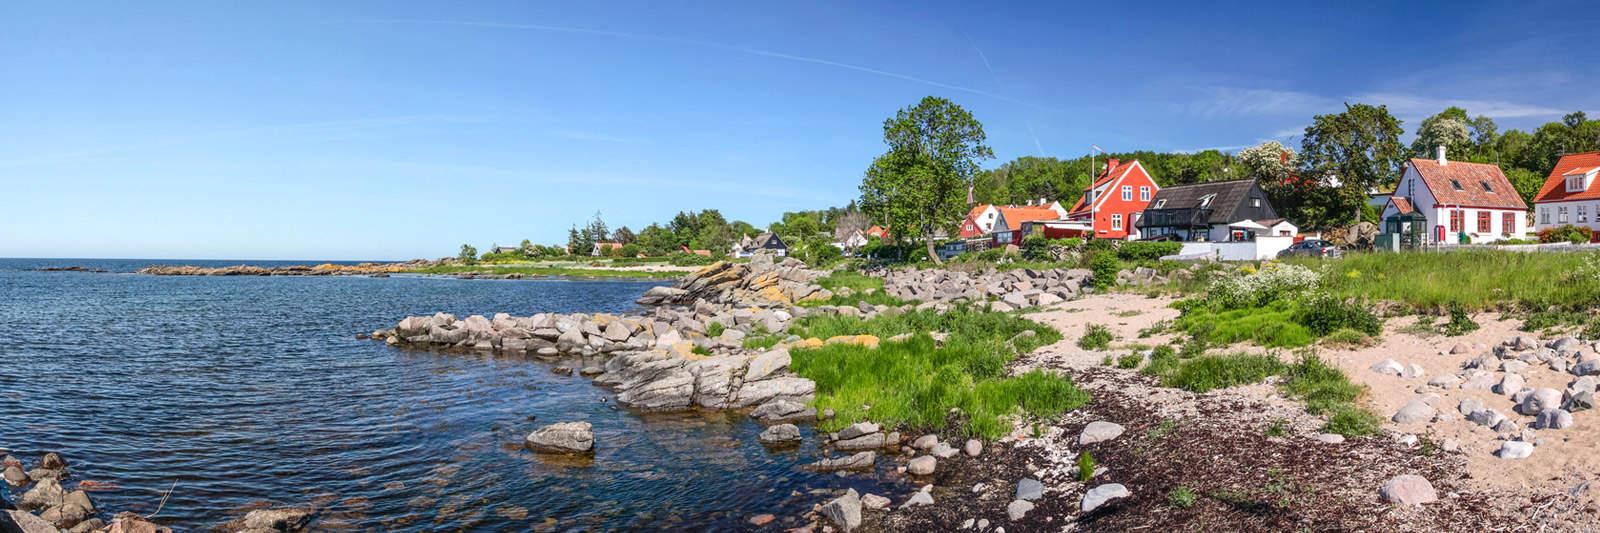 Ferienwohnungen und Ferienhäuser auf Læsø - tourist-online.de